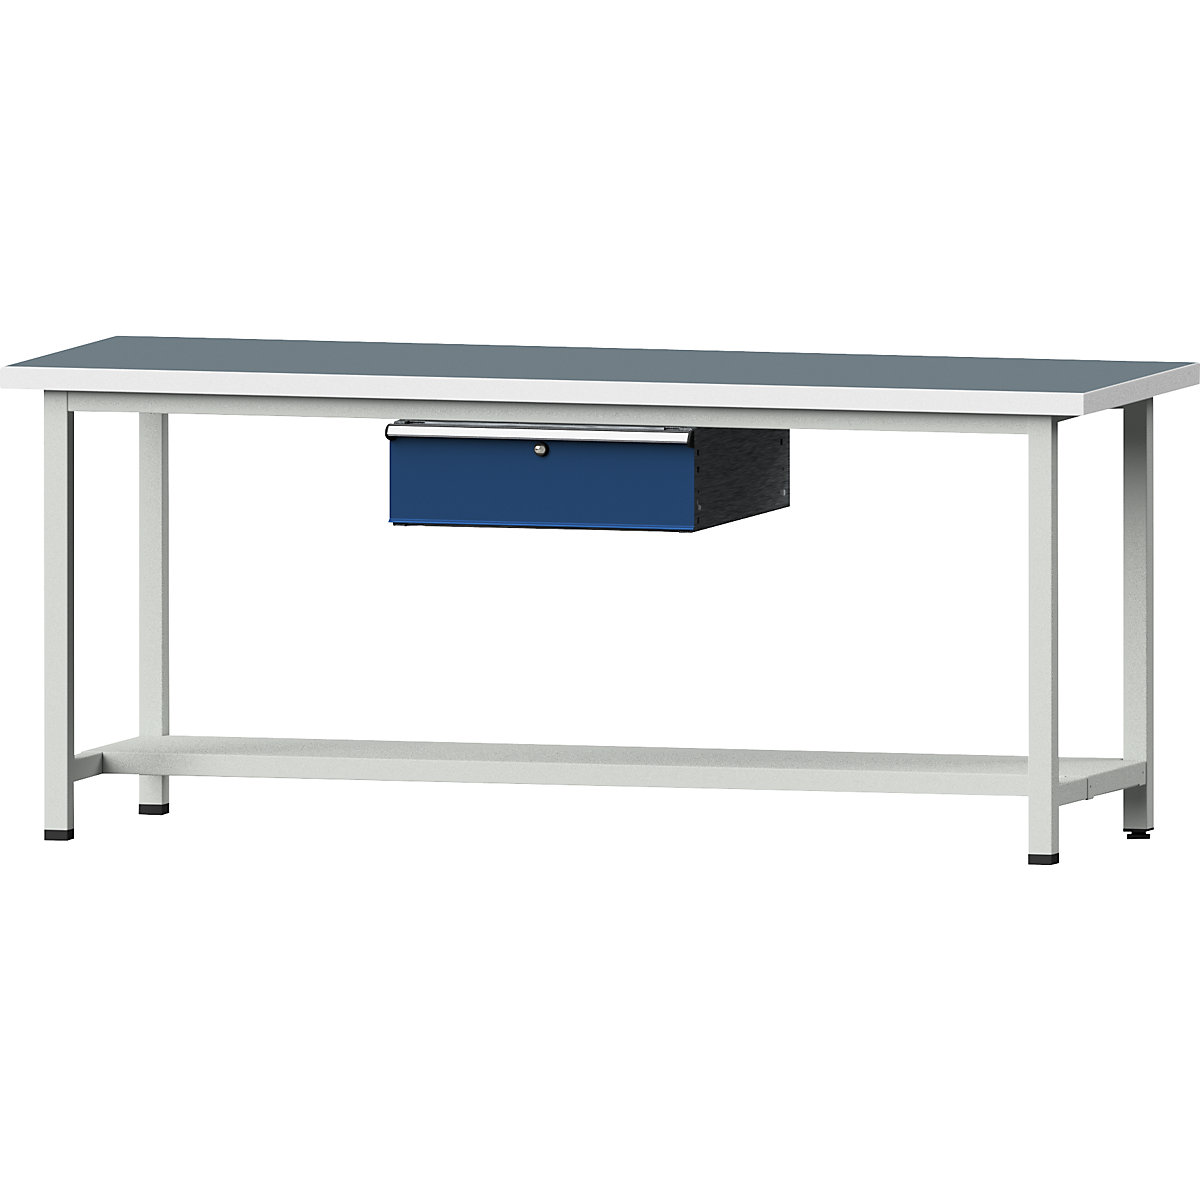 Dílenský stůl s rámovou konstrukcí – ANKE, 1 zásuvka, 1 odkládací police, šířka 2000 mm, univerzální deska-9